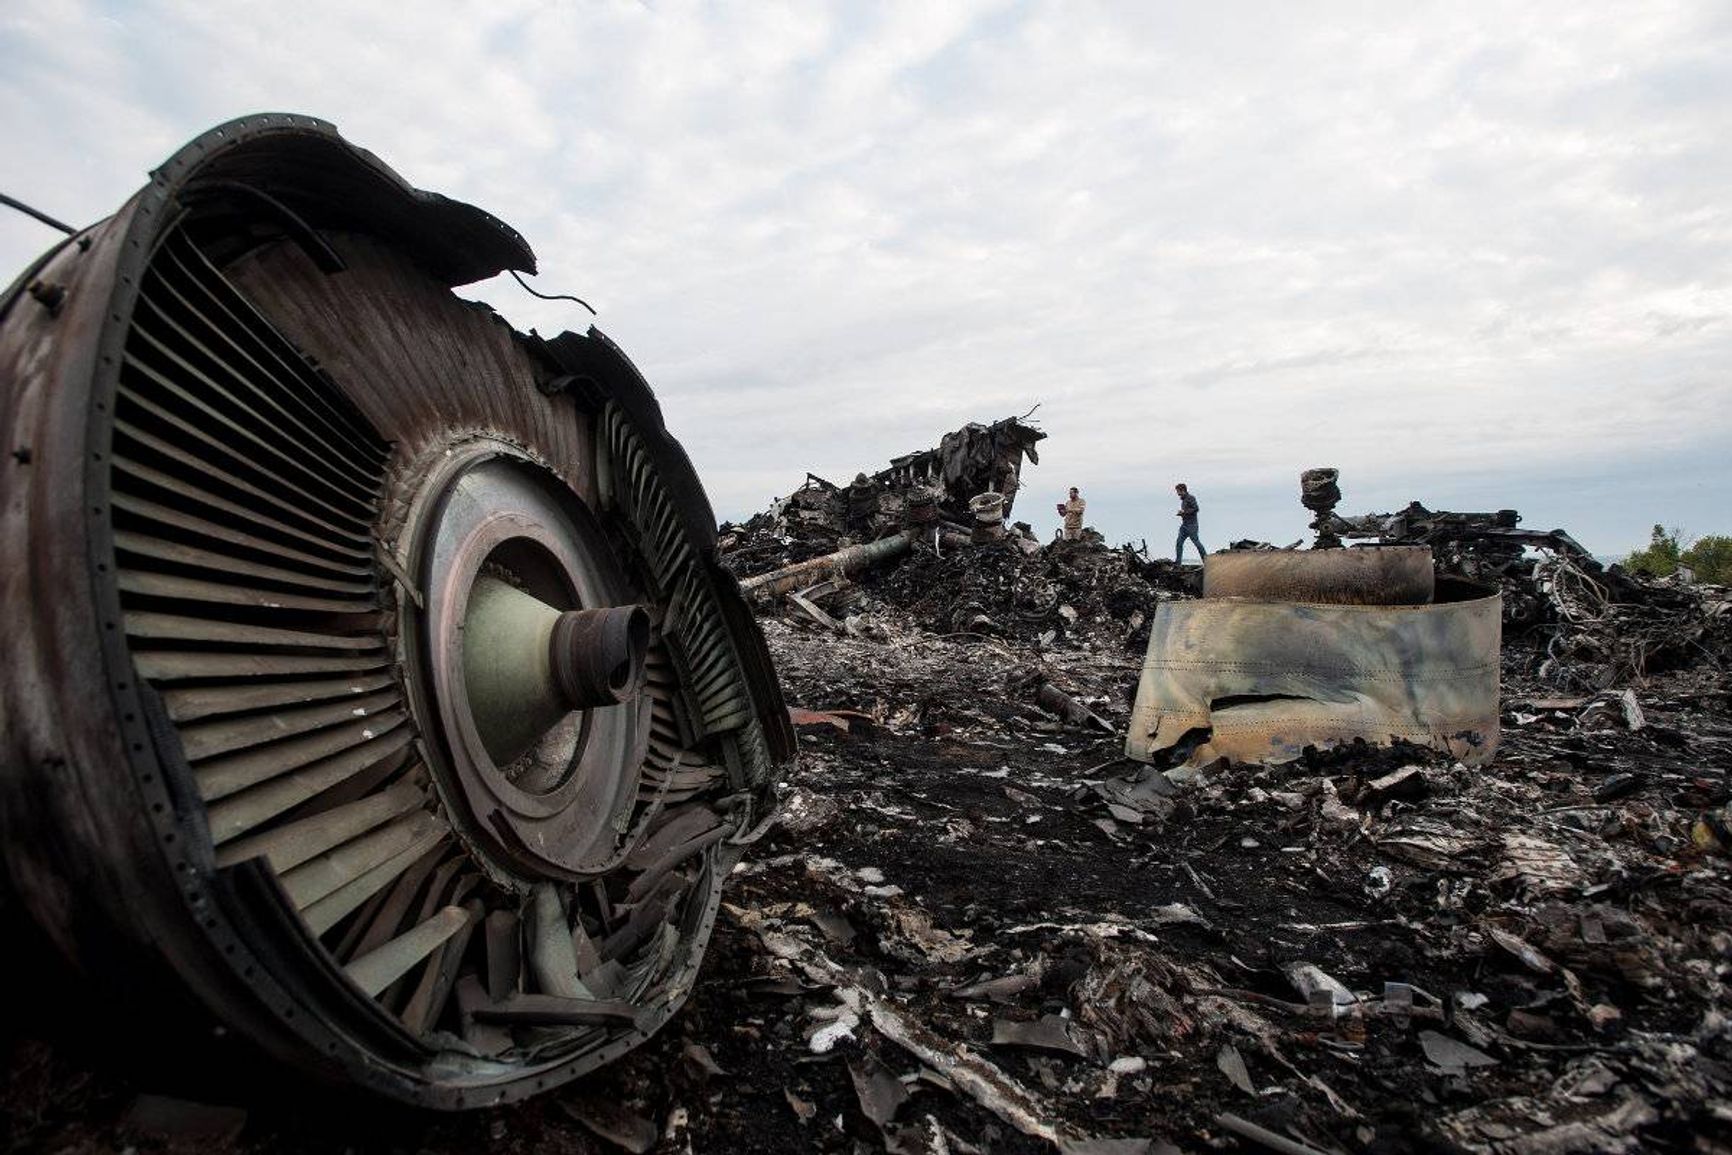 Украина и Молдова — кандидаты в ЕС, доклад о сбитом Россией MH17, иск Украины в ЕСПЧ против РФ. Главное за день